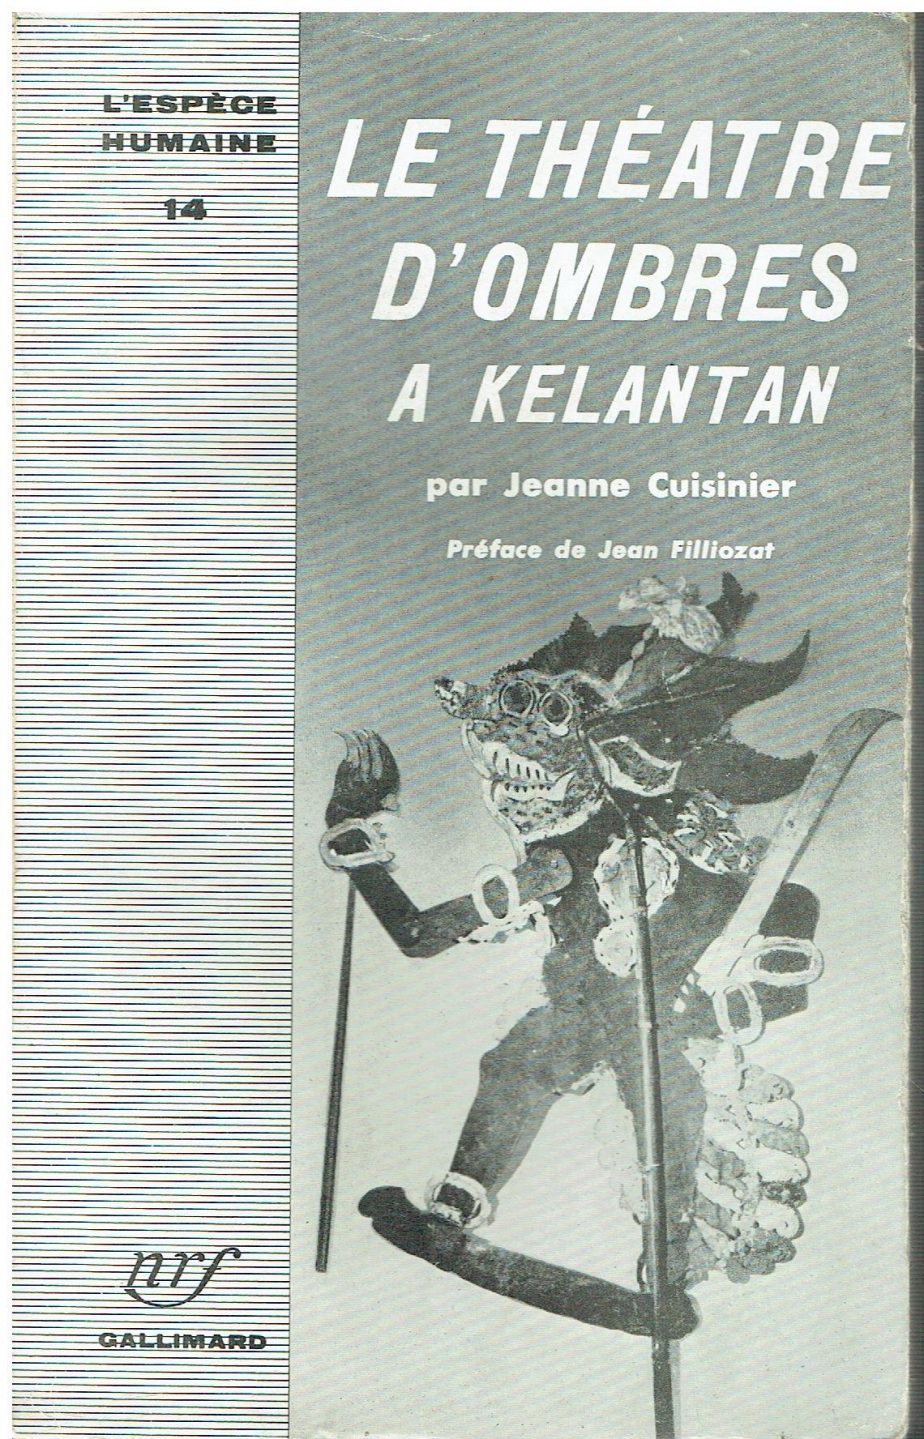 LE Theatre d' Ombres a Kelantan